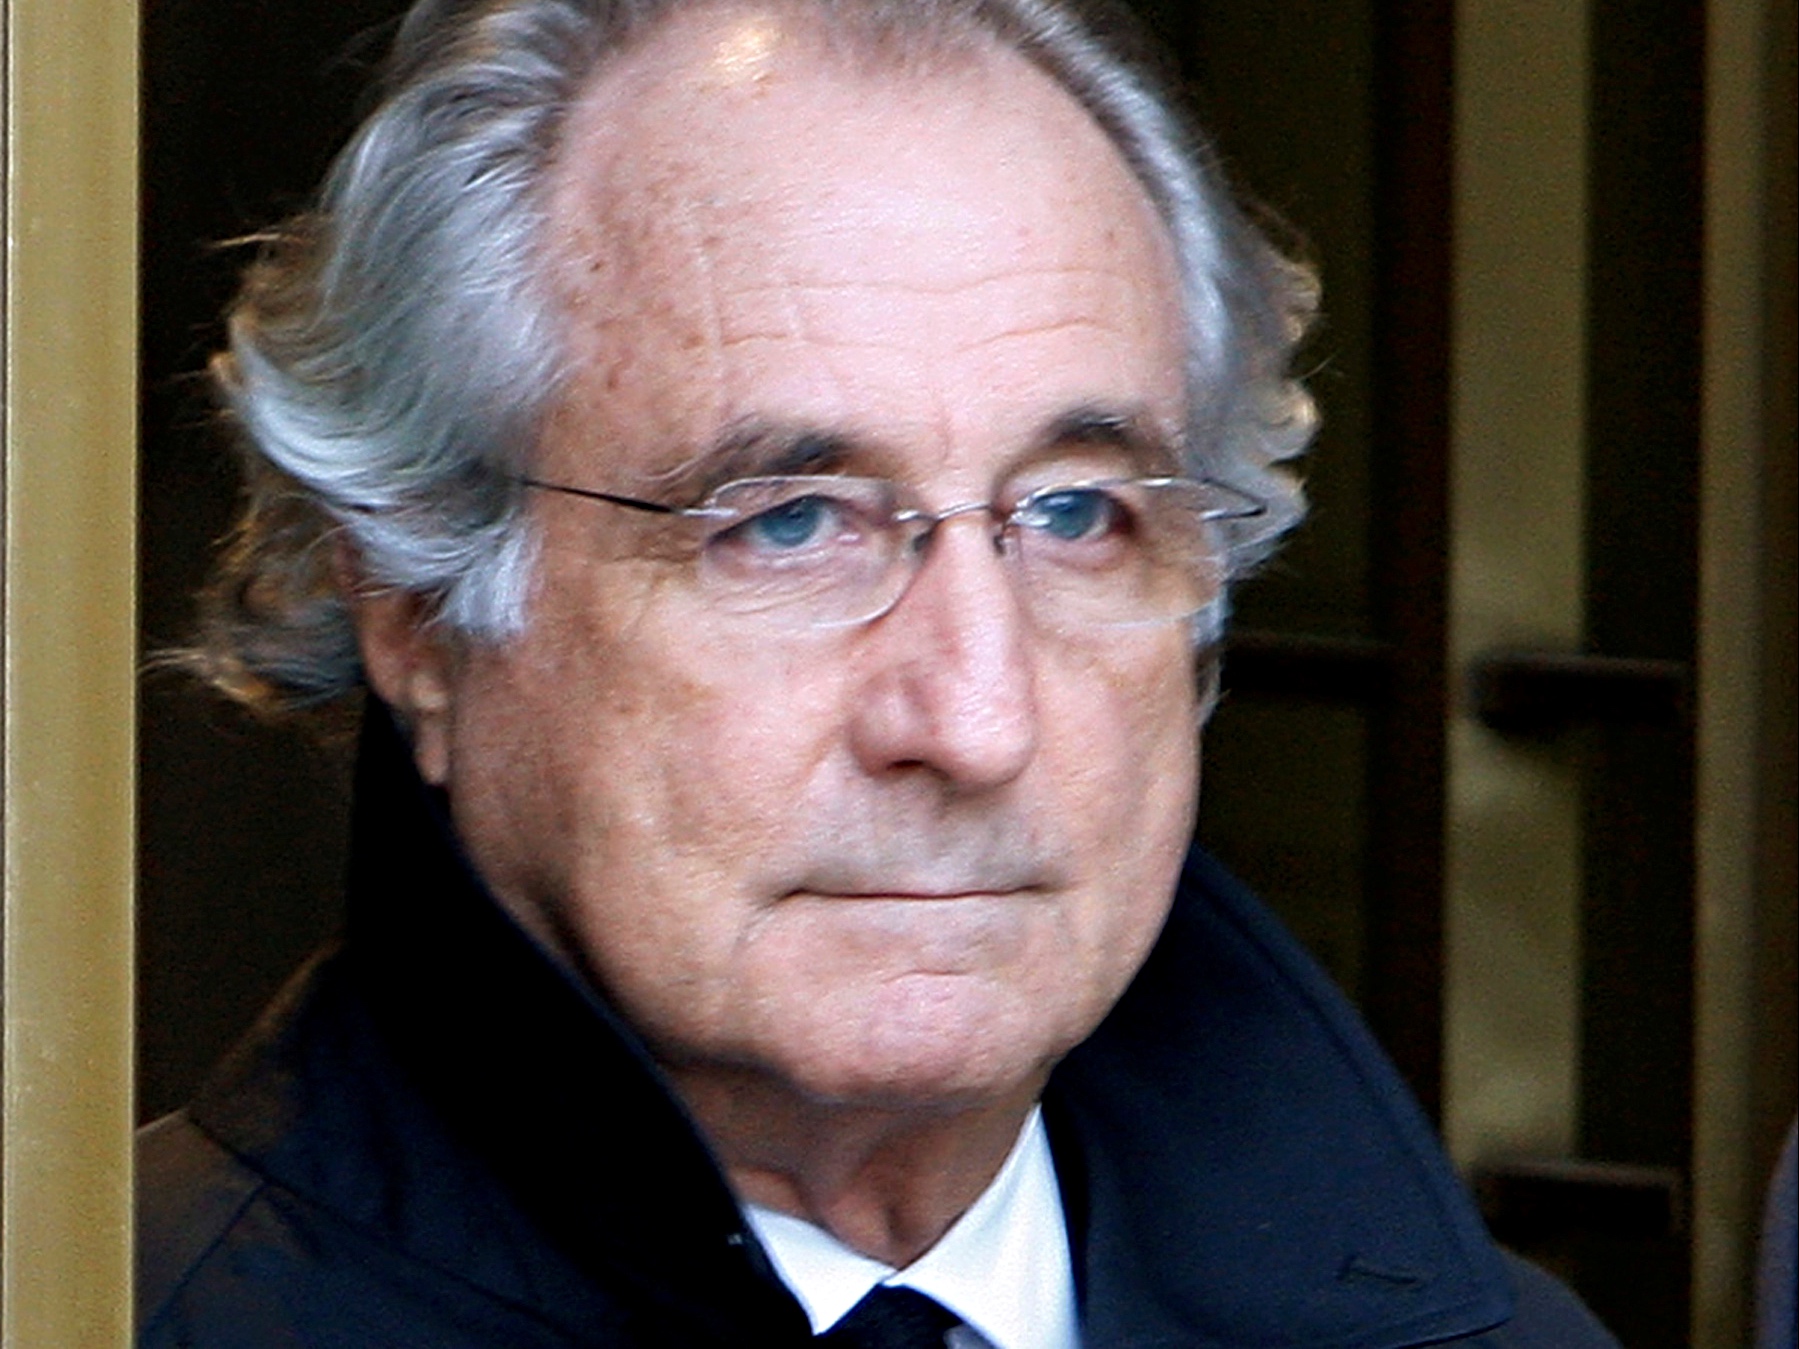 Louis van Gaal was slachtoffer van beursboef Bernard Madoff. Foto: REUTERS/Brendan McDermid